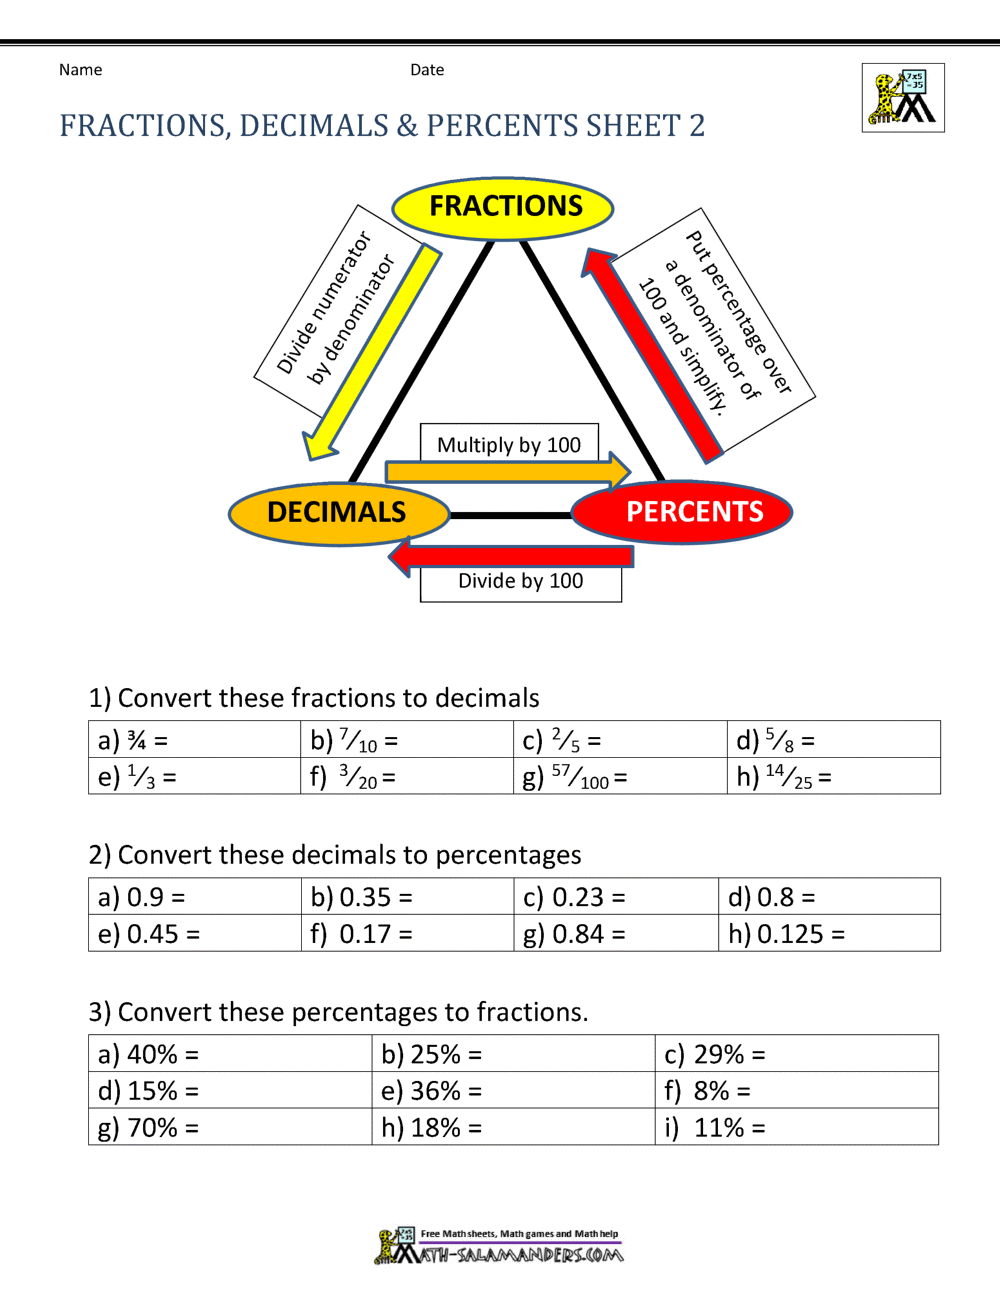 Fractions Decimals Percents Worksheets Regarding Comparing Fractions And Decimals Worksheet